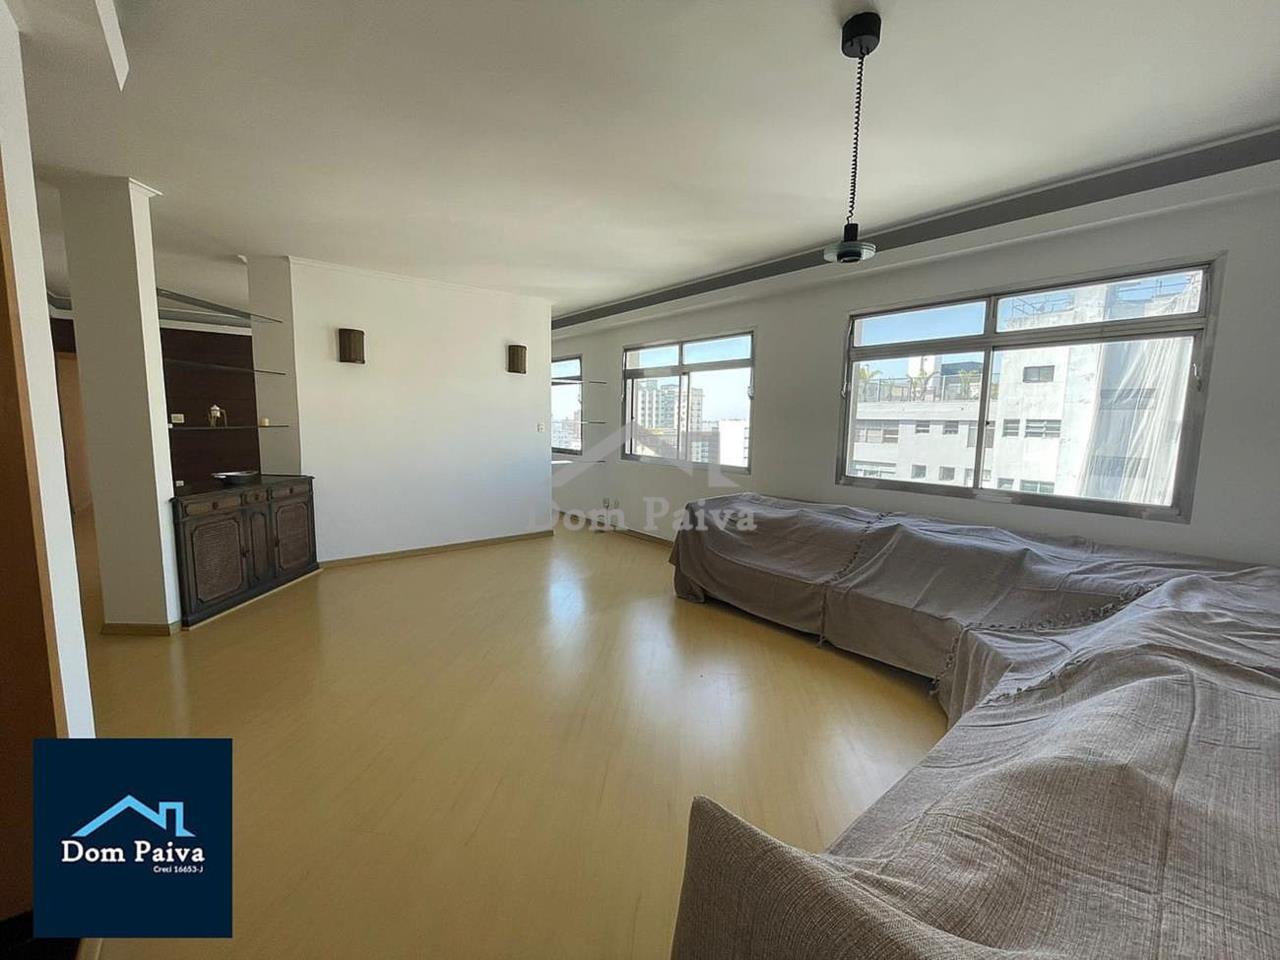 Apartamento So Paulo  Higienpolis  Condominio Edificio Bolivar - Rua Maranhao, 531 - Higienopolis